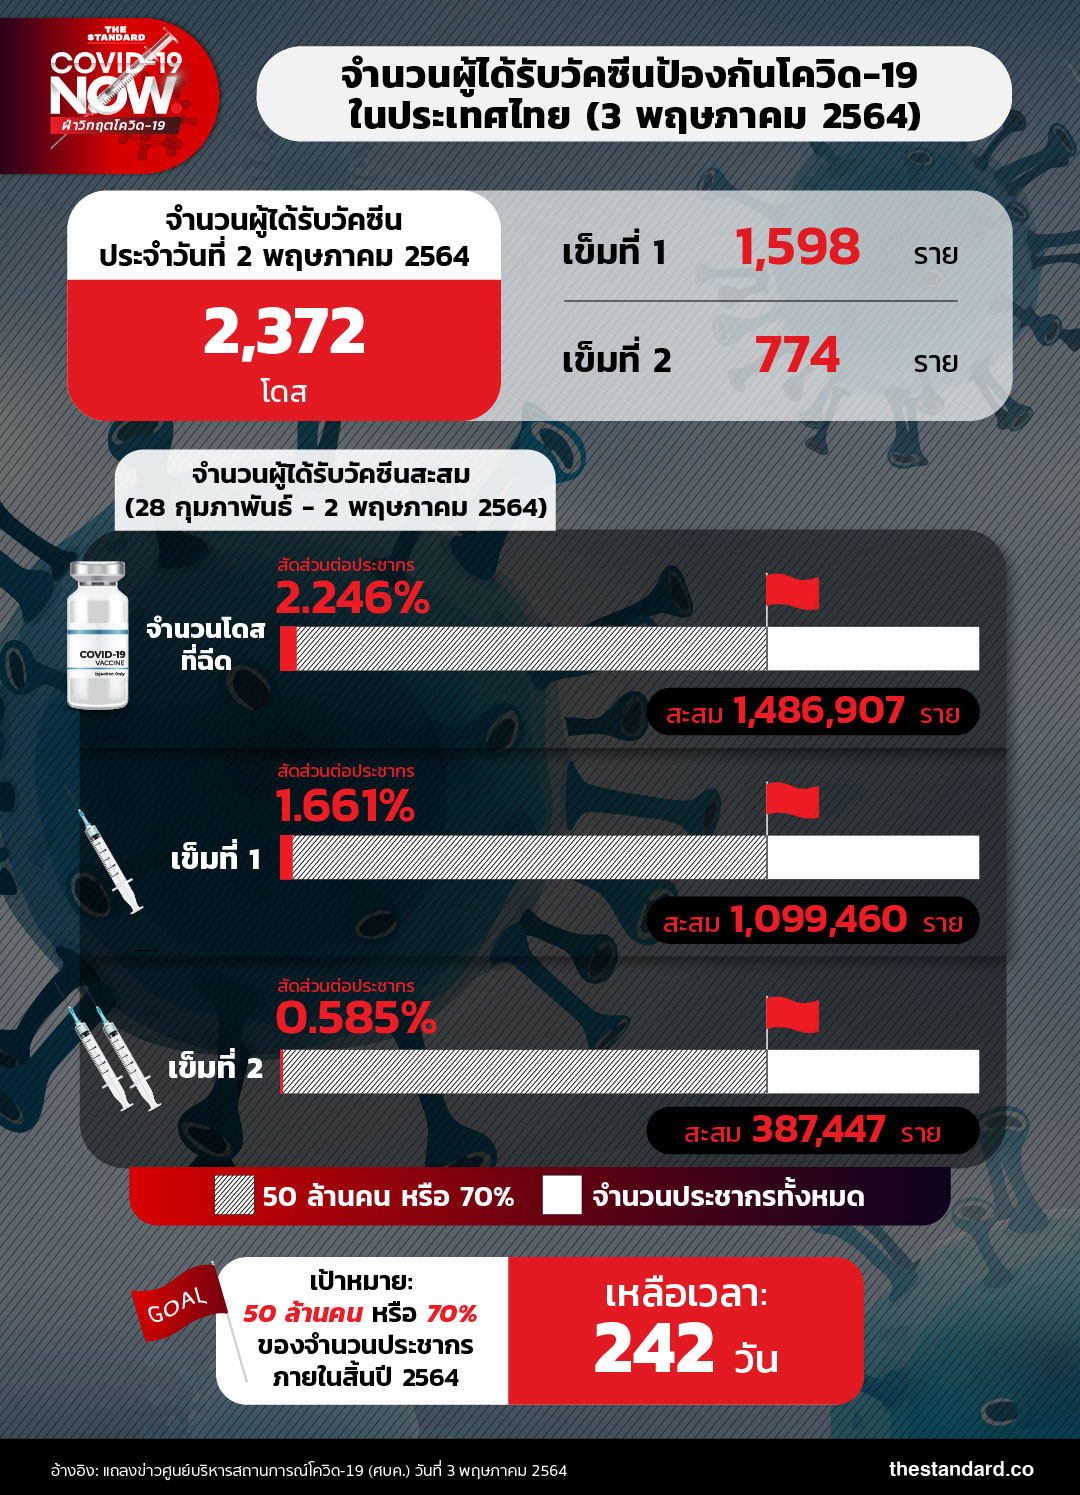 จำนวนผู้ได้รับวัคซีนป้องกันโควิด-19 ในประเทศไทย (3 พฤษภาคม 2564)